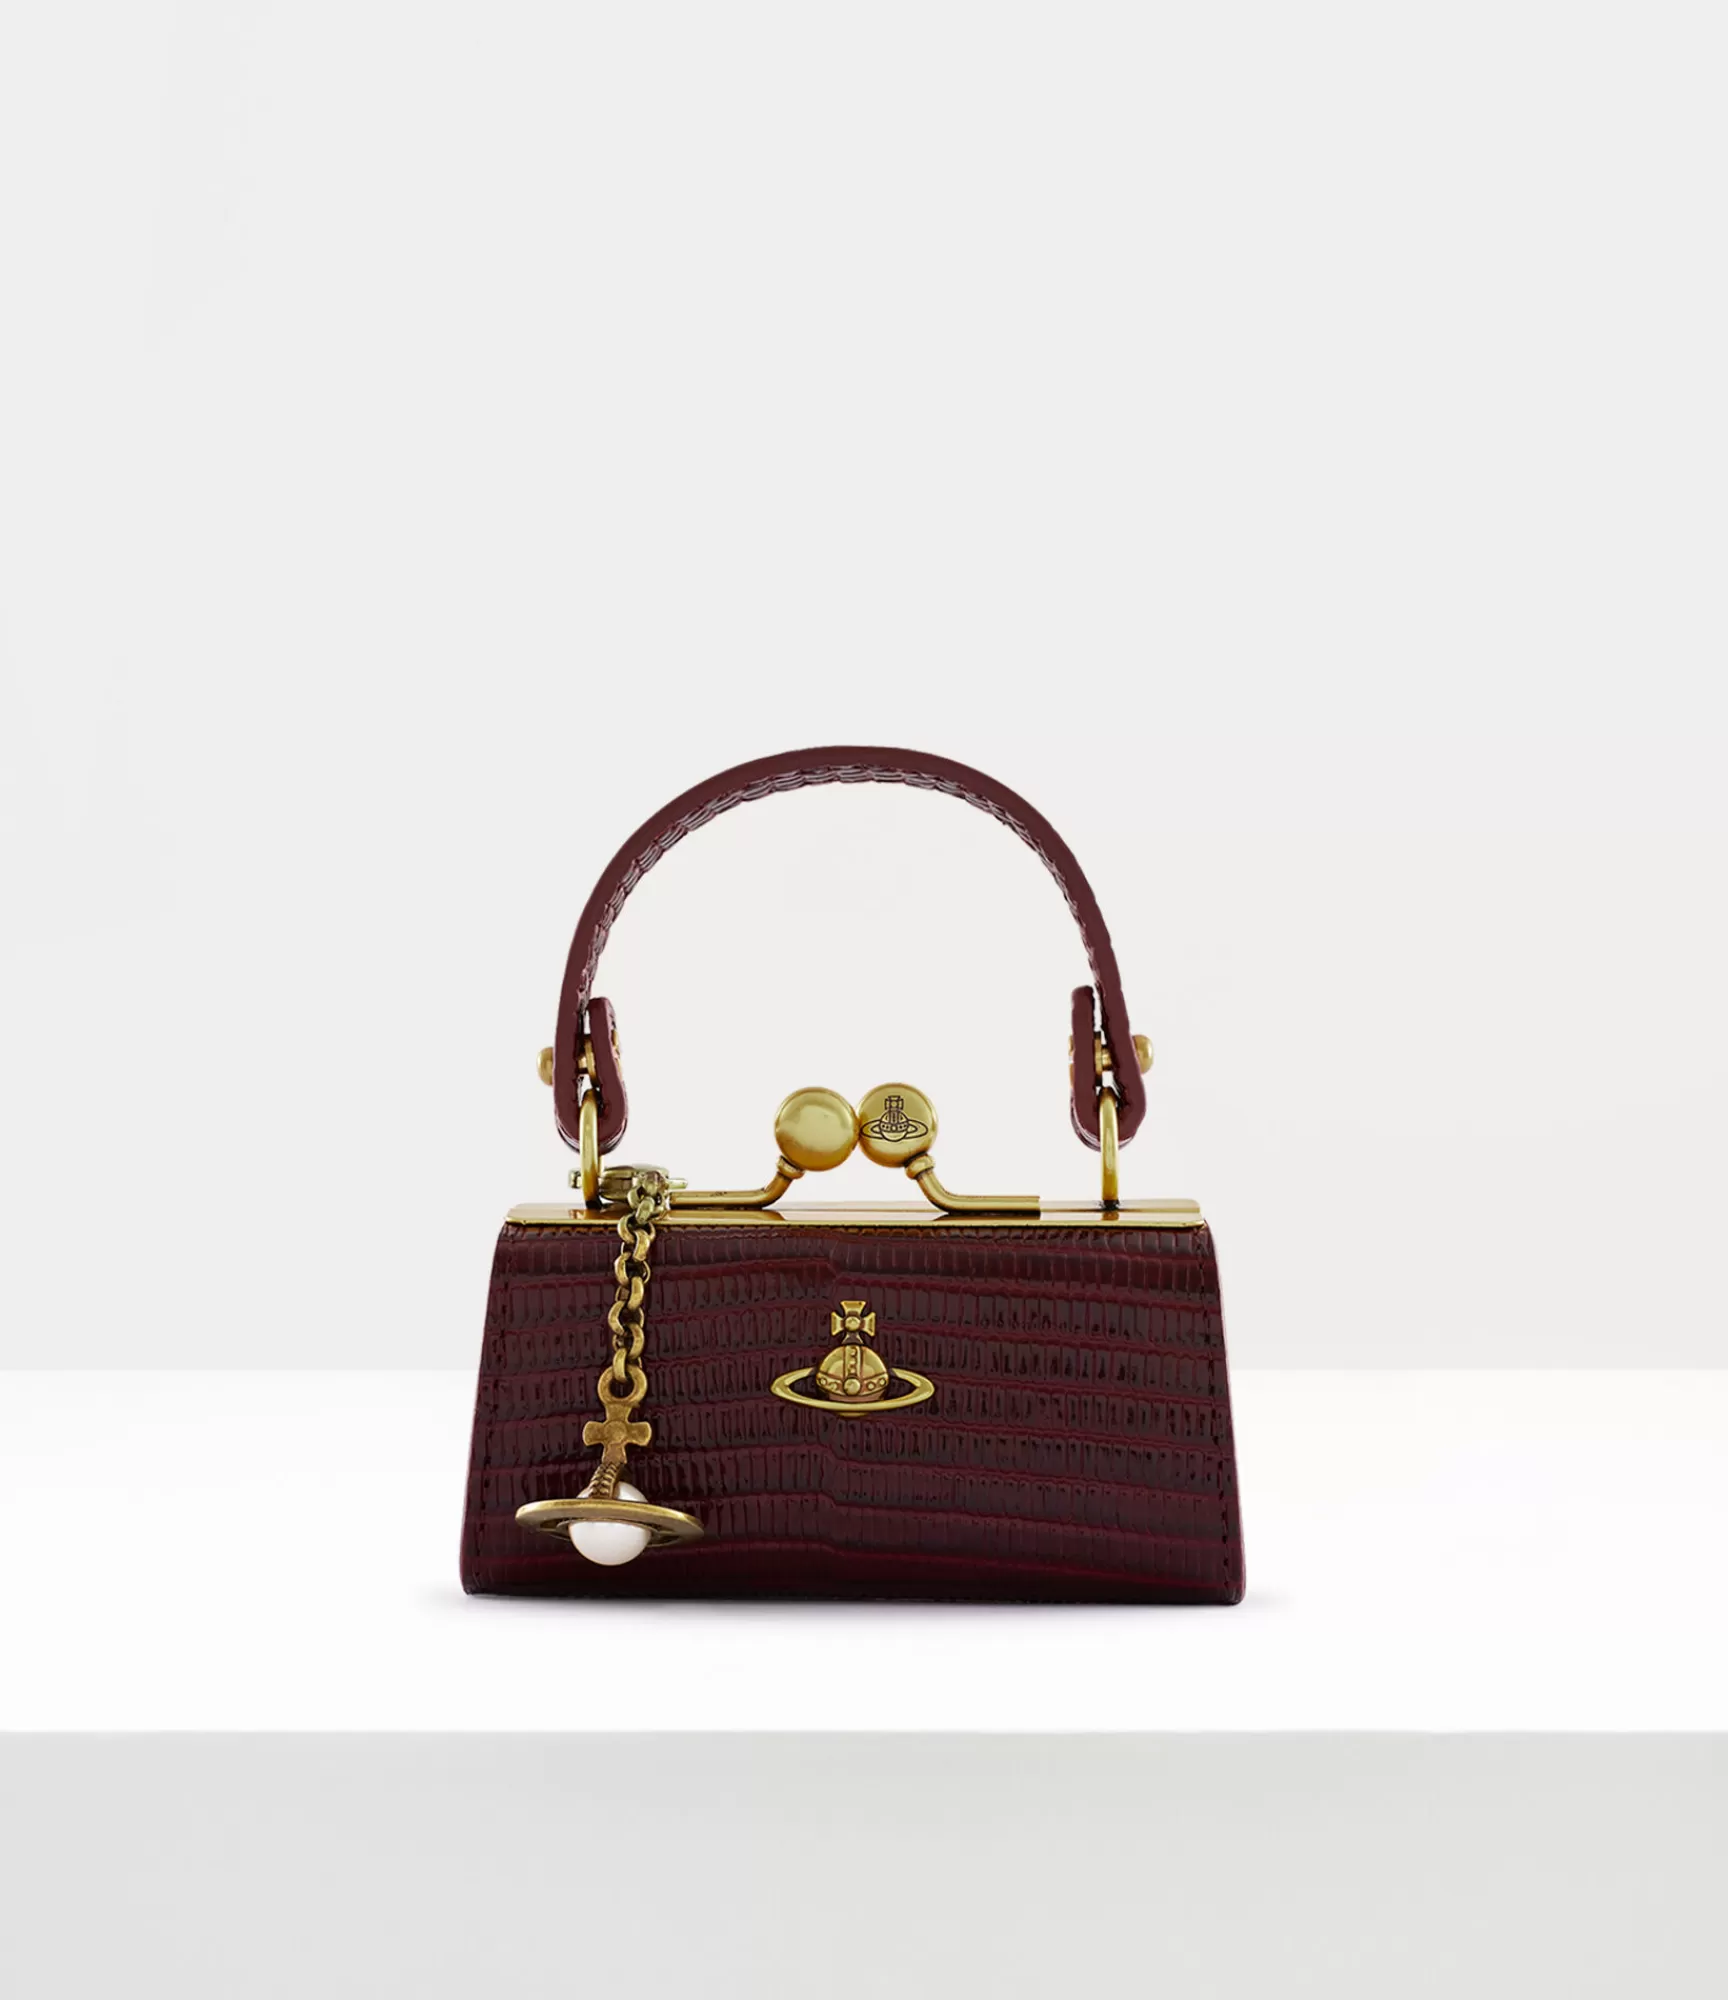 Vivienne Westwood Handbags*Lizard doll bag Burgundy